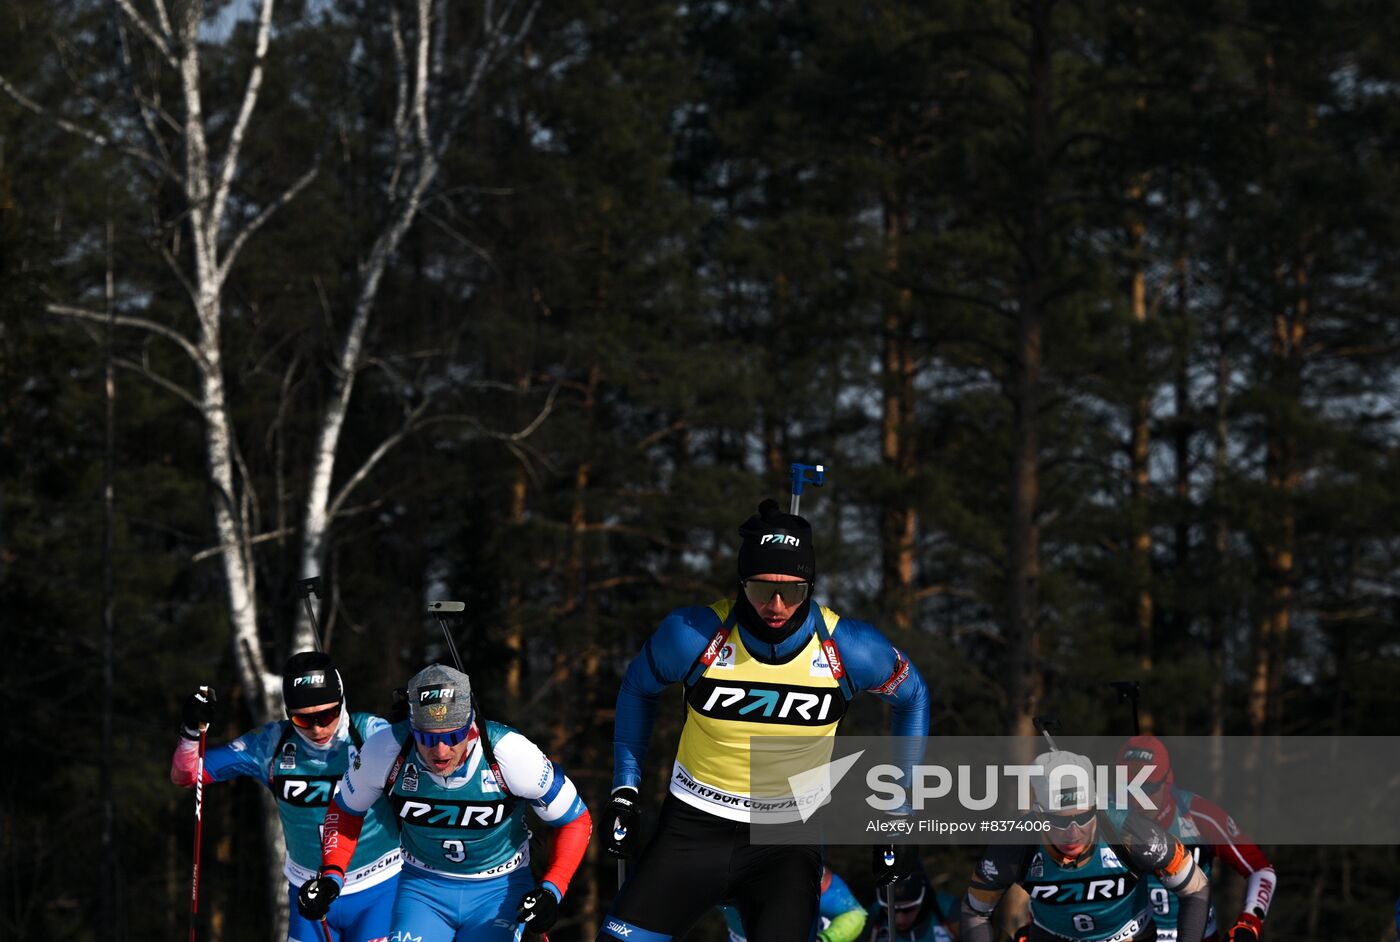 Russia Biathlon Cup Men